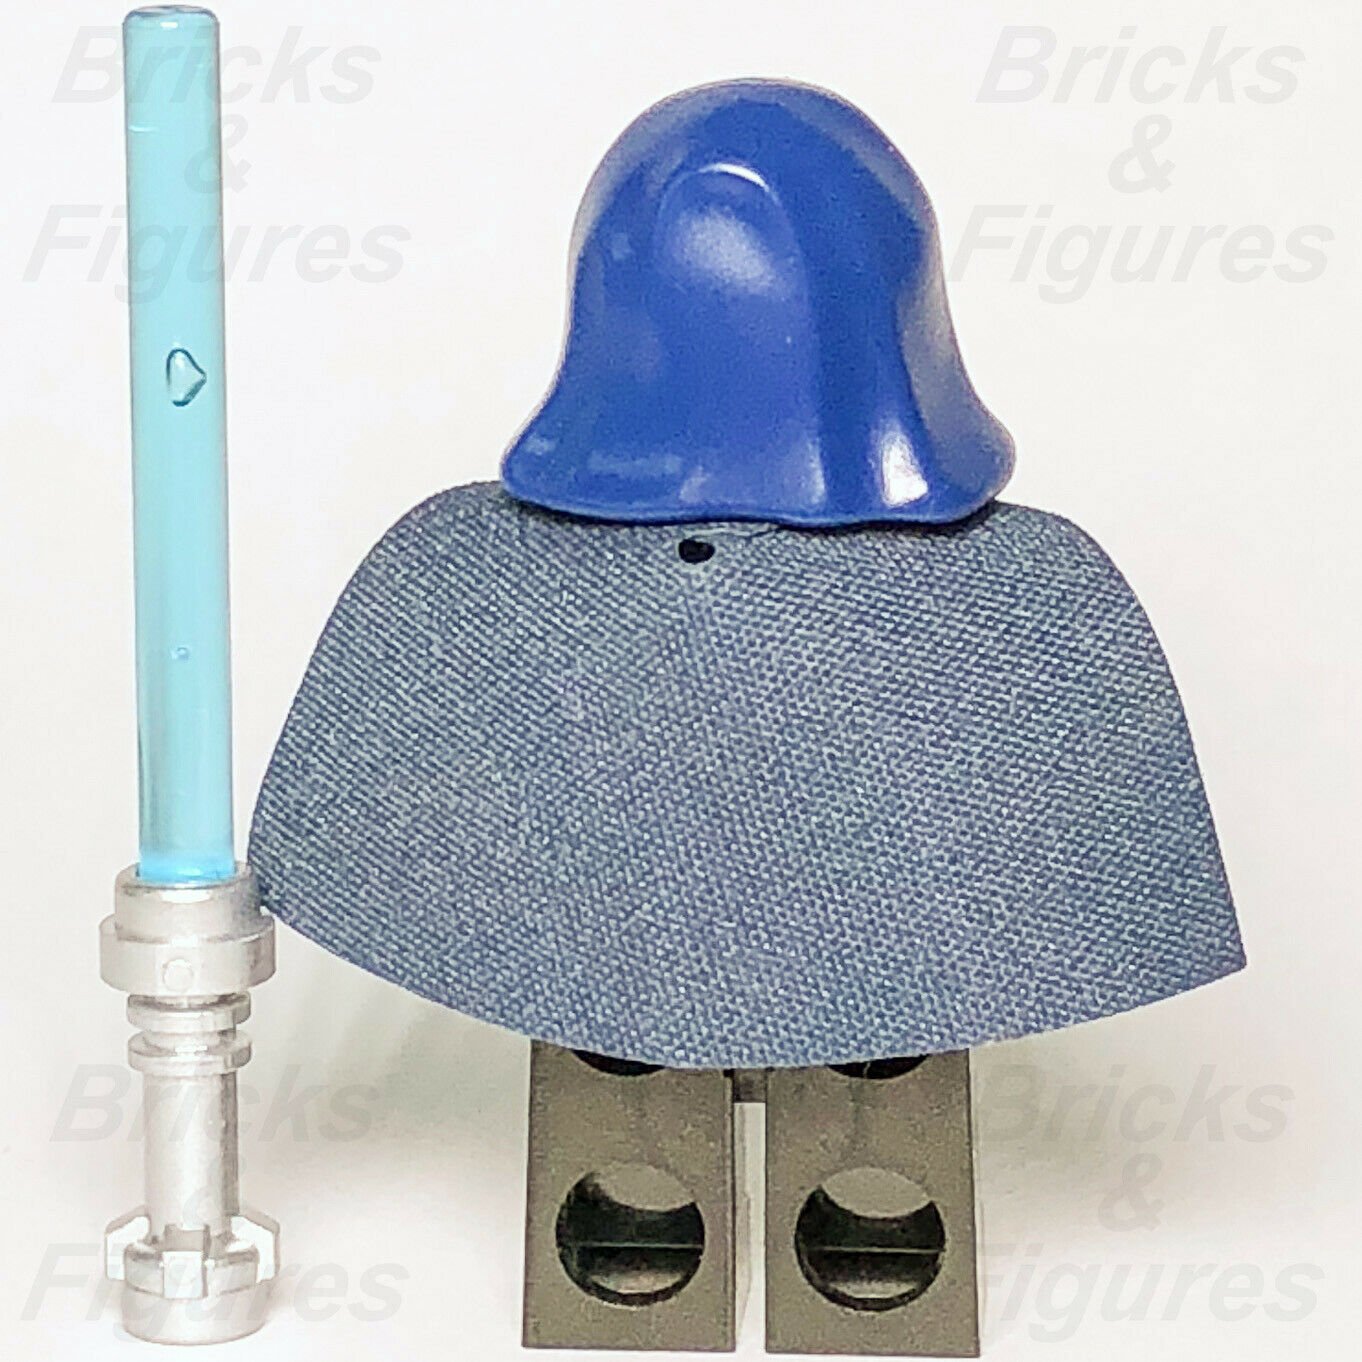 New Star Wars LEGO Barriss Offee Jedi Padawan Clone Wars Minifigure 9491 - Bricks & Figures